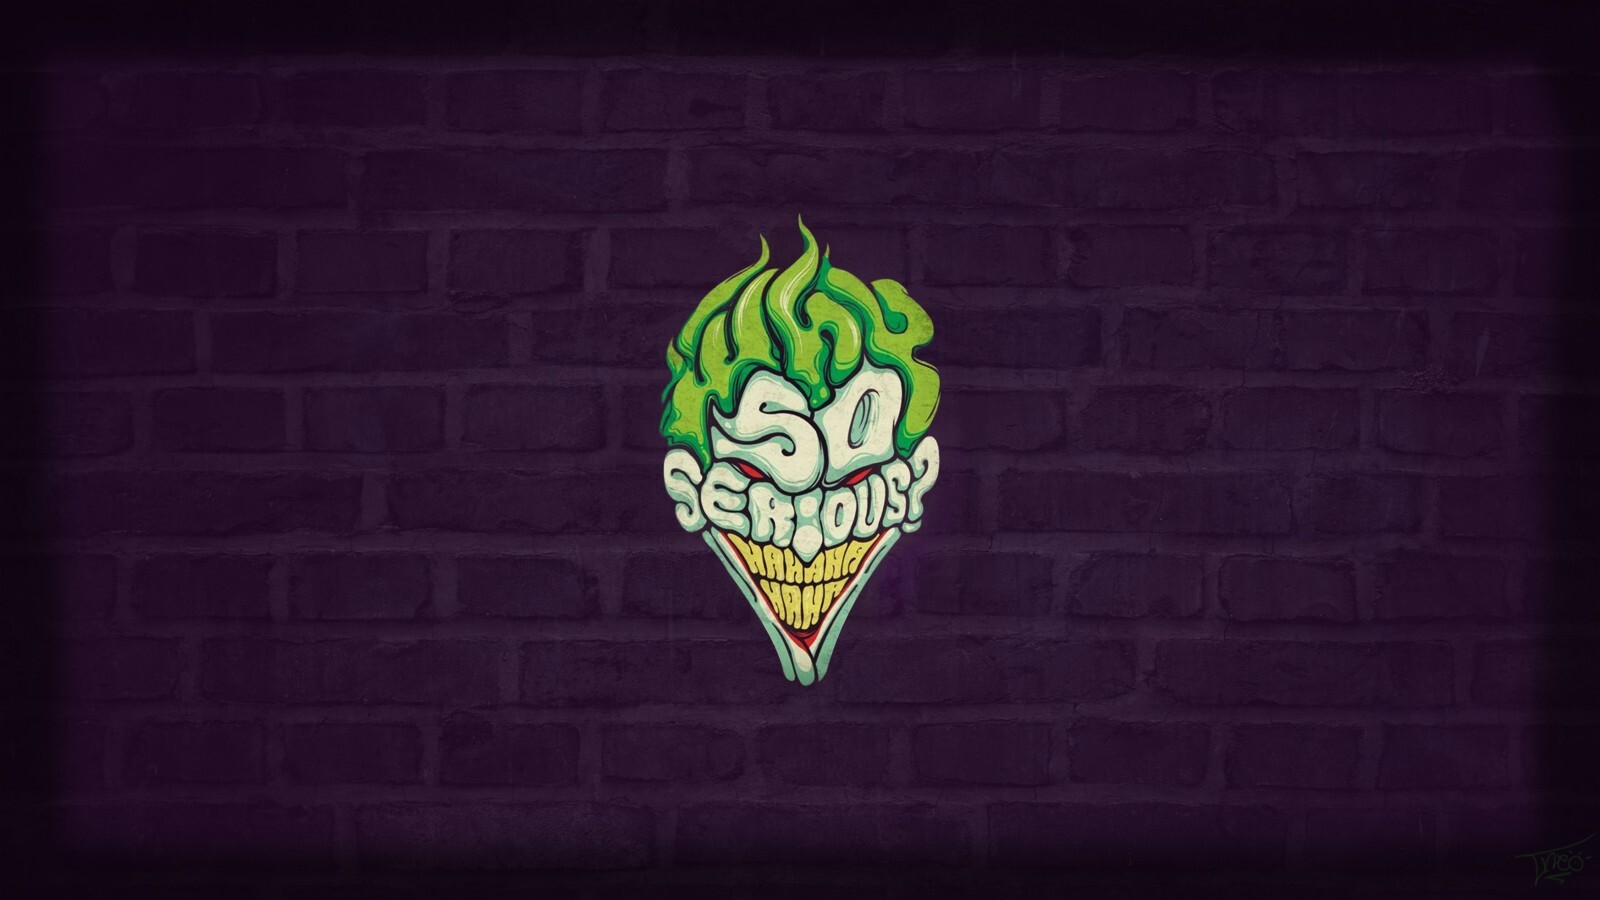 1600x900 So Serious Joker Wallpaper,1600x900 Resolution HD 4k ...